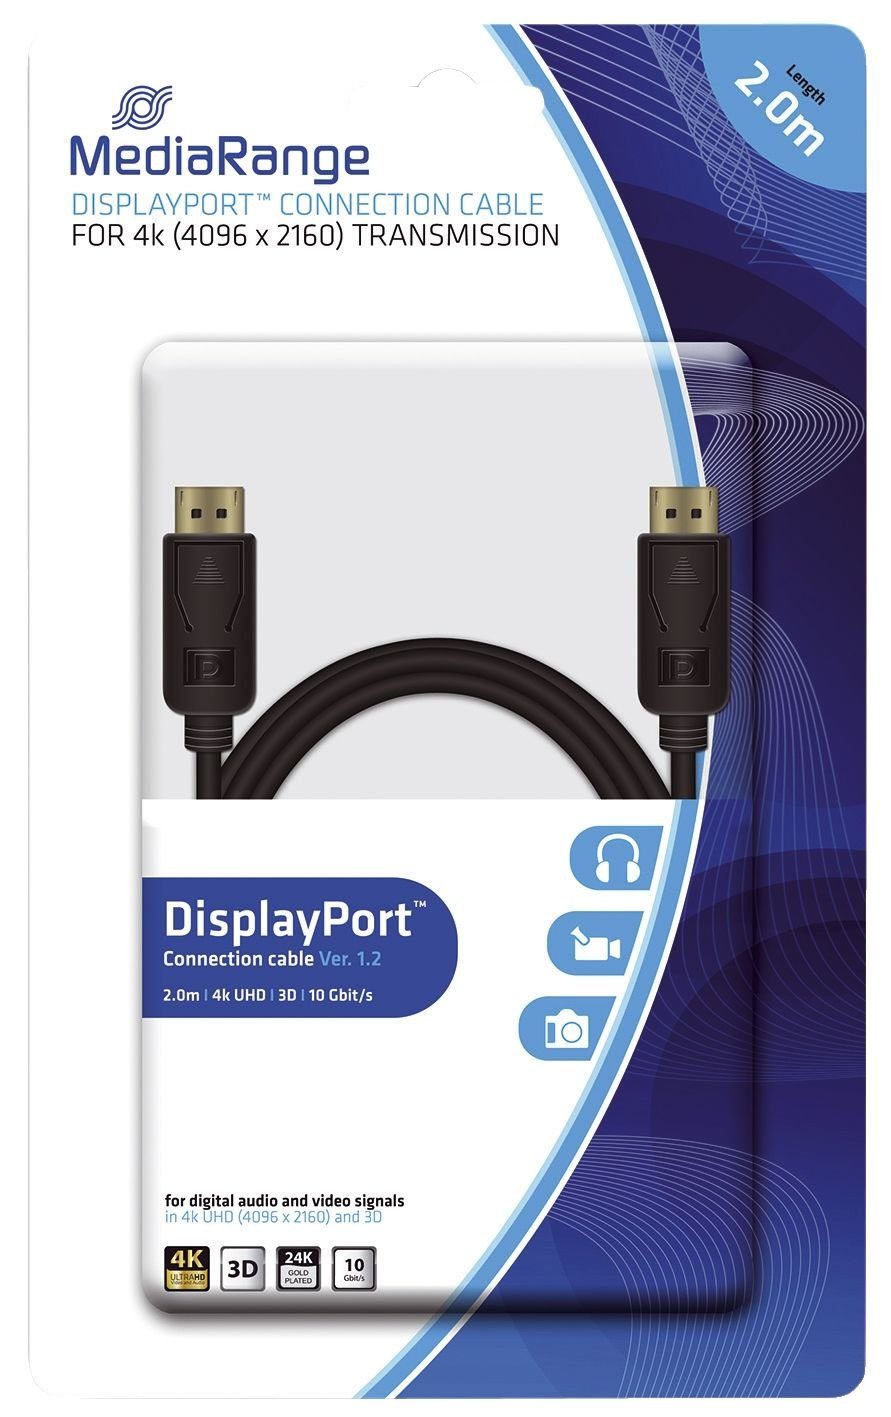 10 schwarz Mediarange MediaRange 2m Anschlusskabel Gbit/s Isolierband DisplayPort